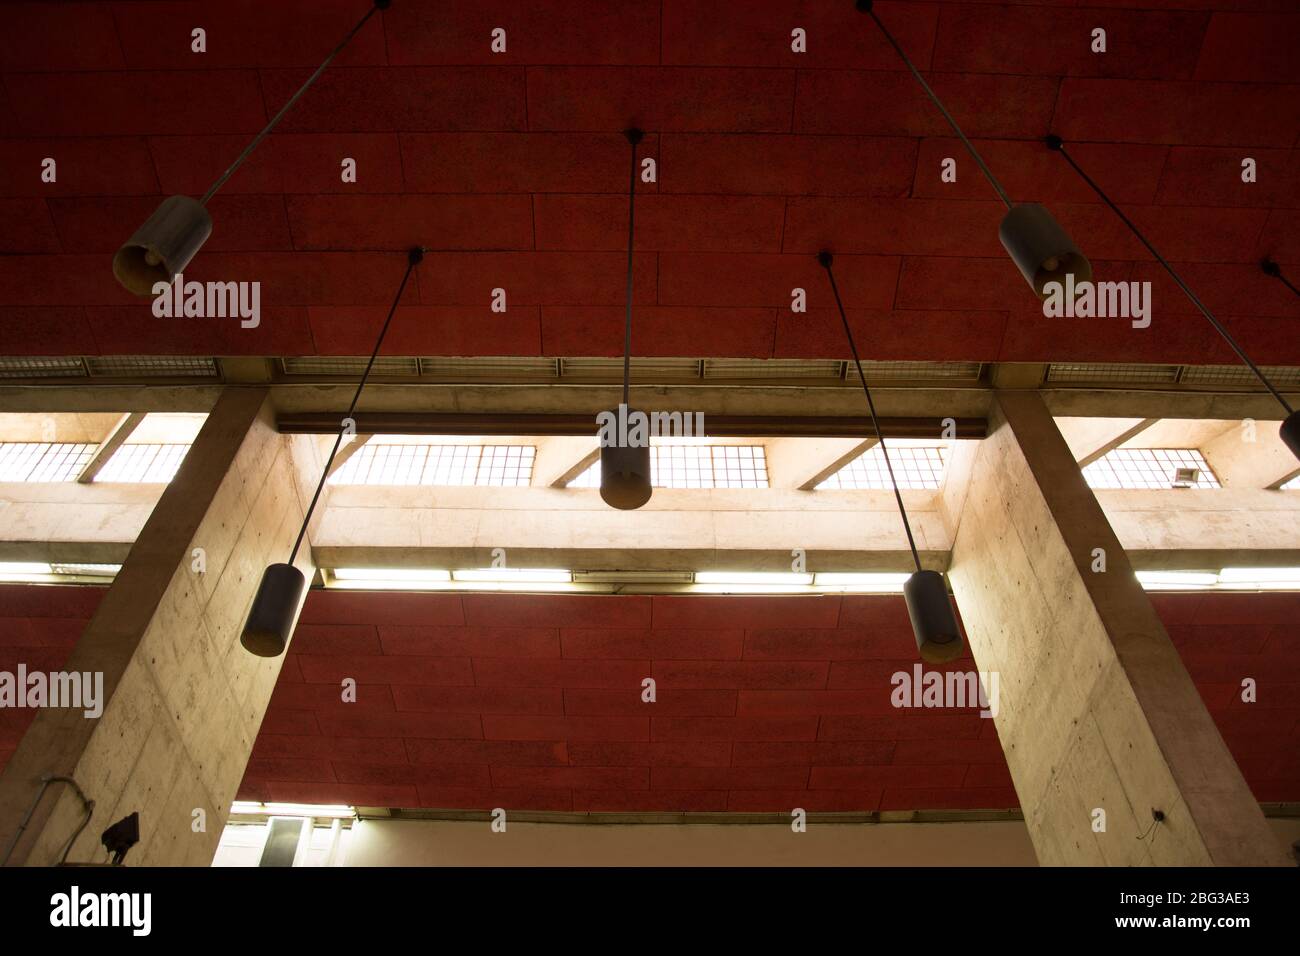 Feux ronds cylindriques suspendus au plafond rouge Banque D'Images